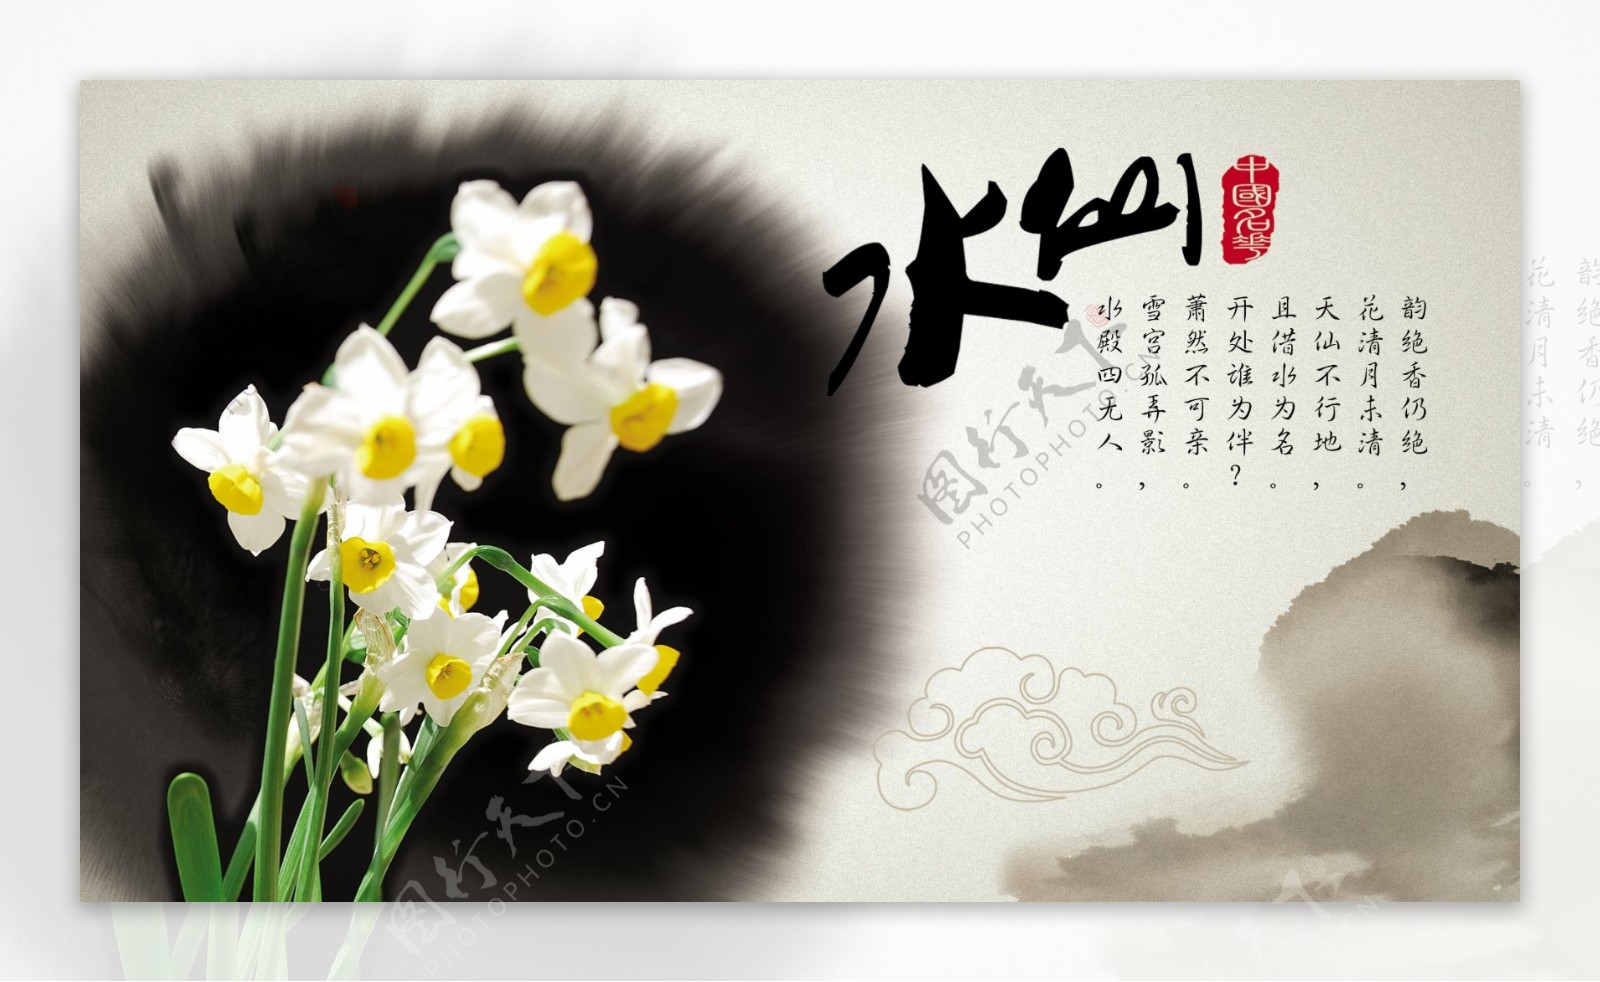 中国名花之水仙图片